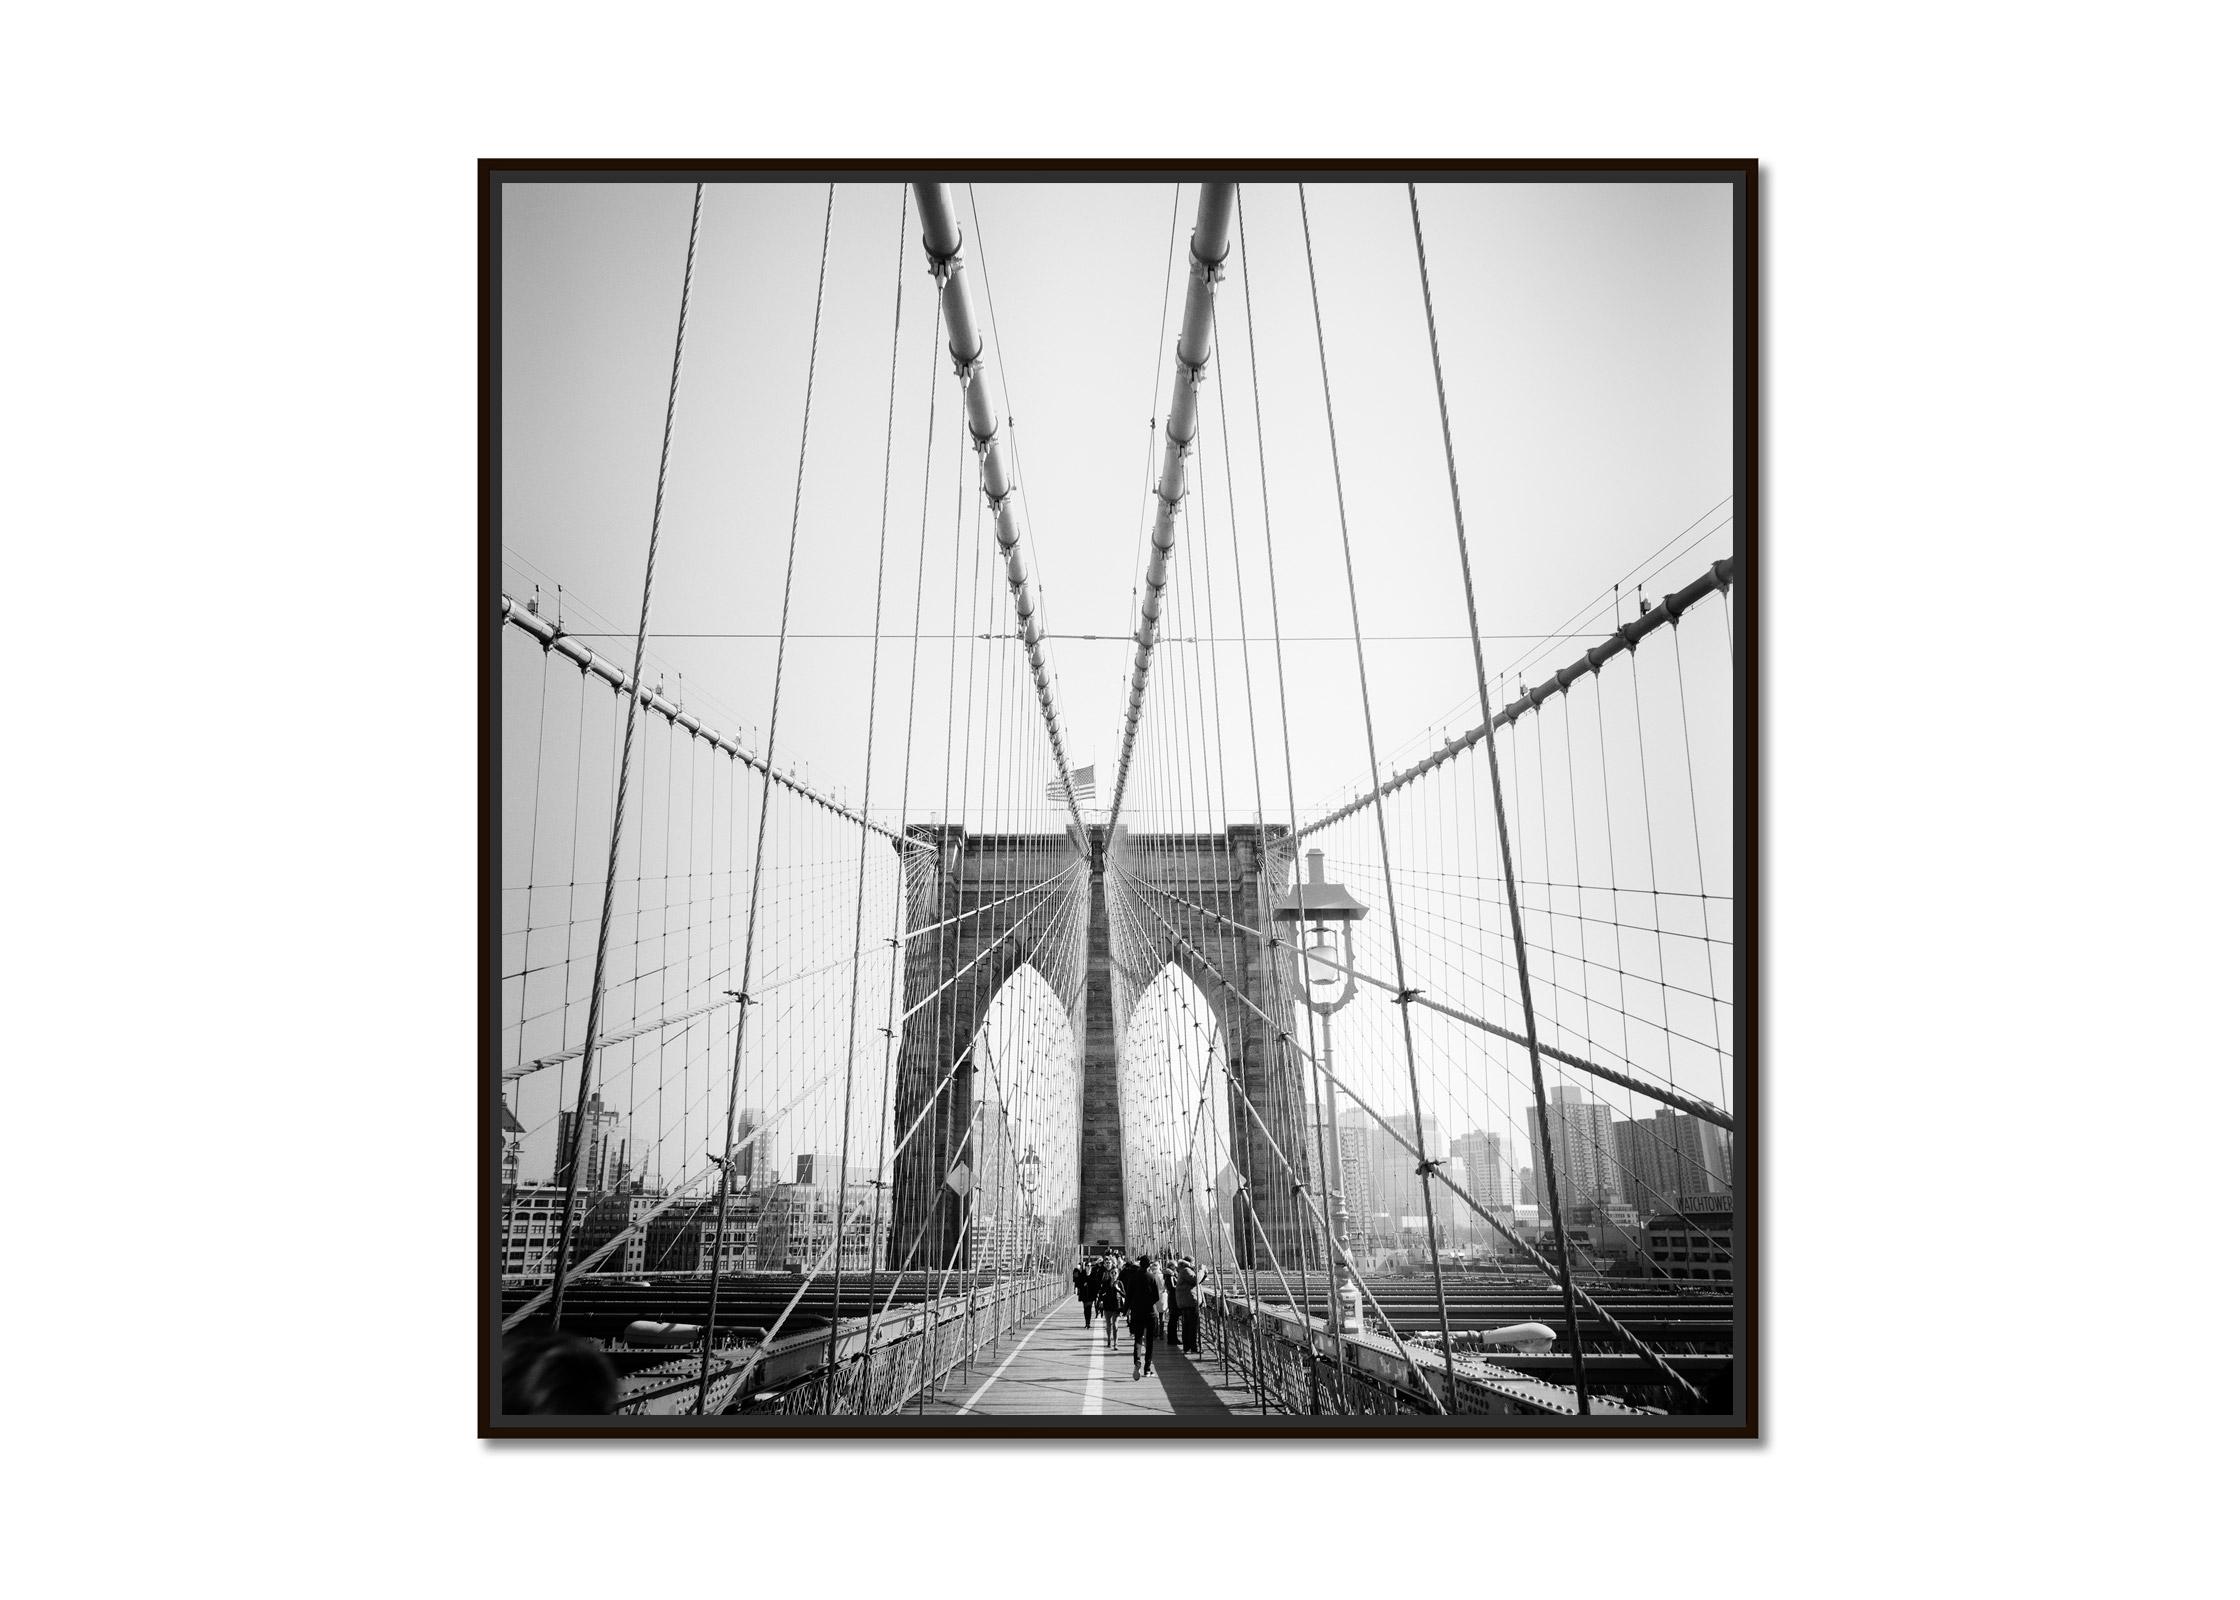 Brooklyn Bridge, New York City, USA, Schwarz-Weiß-Fotografie, Kunstlandschaft – Photograph von Gerald Berghammer